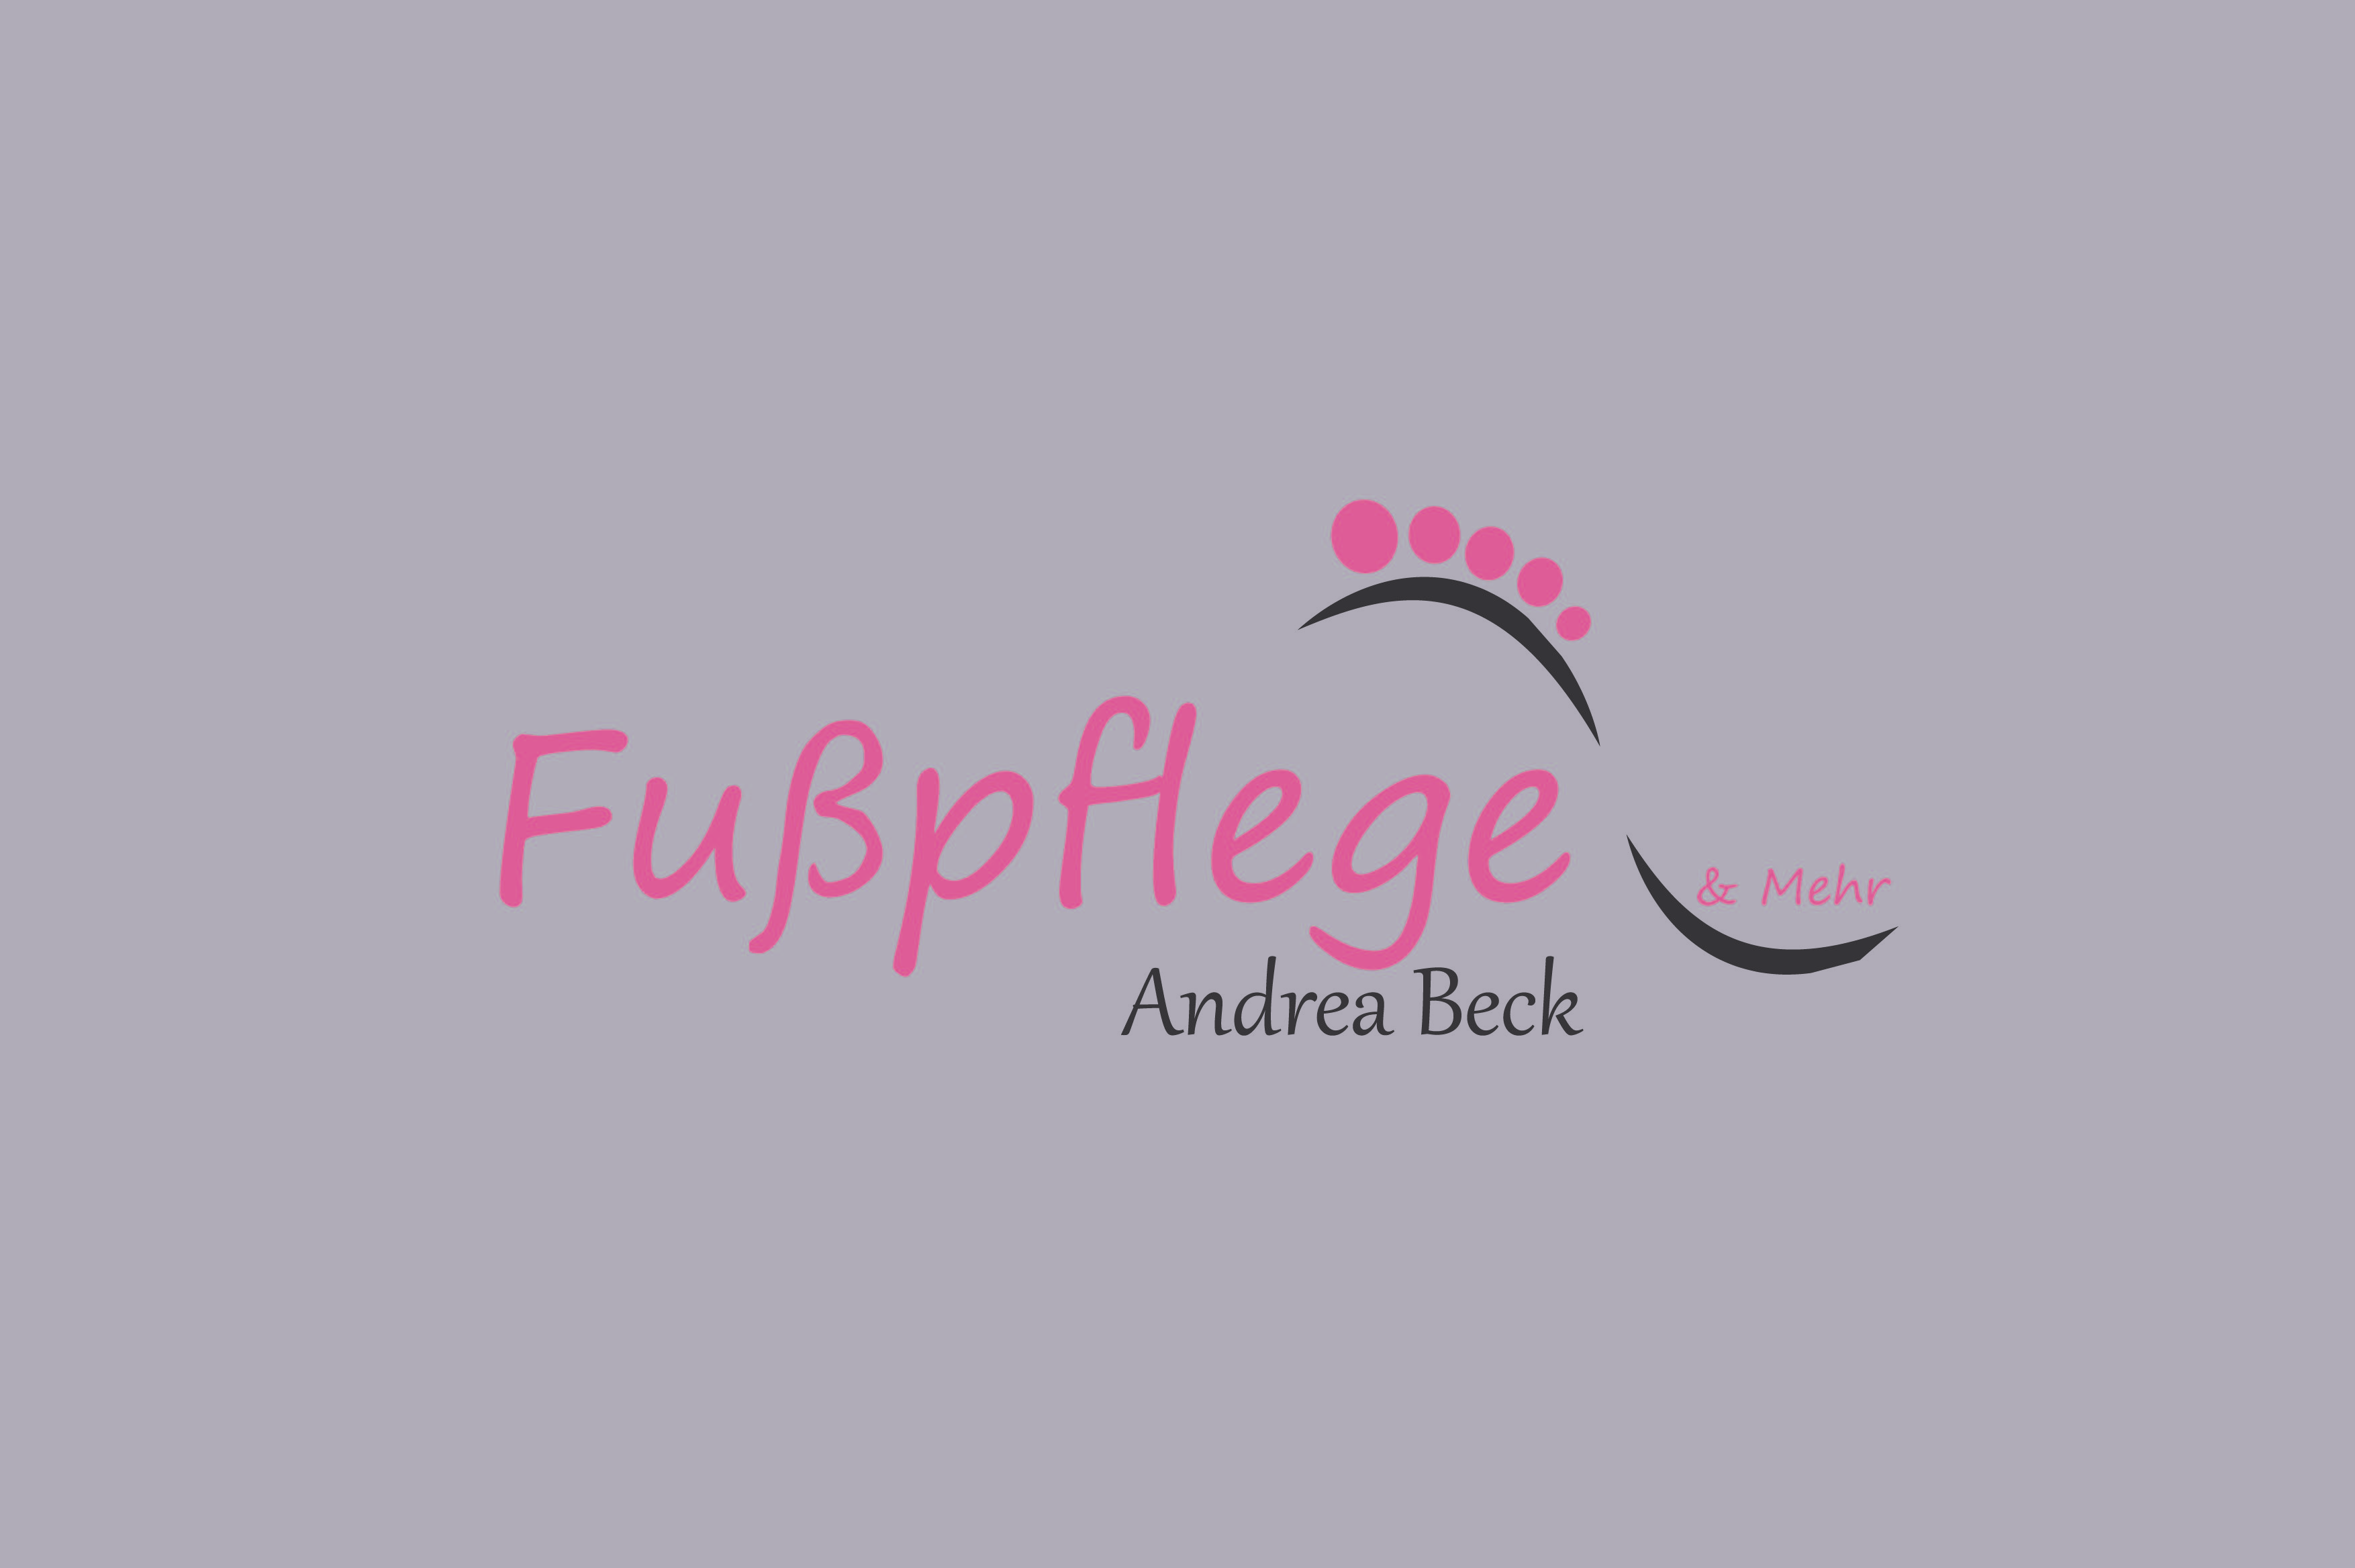 Fußpflege & Mehr - Andrea Beck, Hargesheim, Rheinland-Pfalz